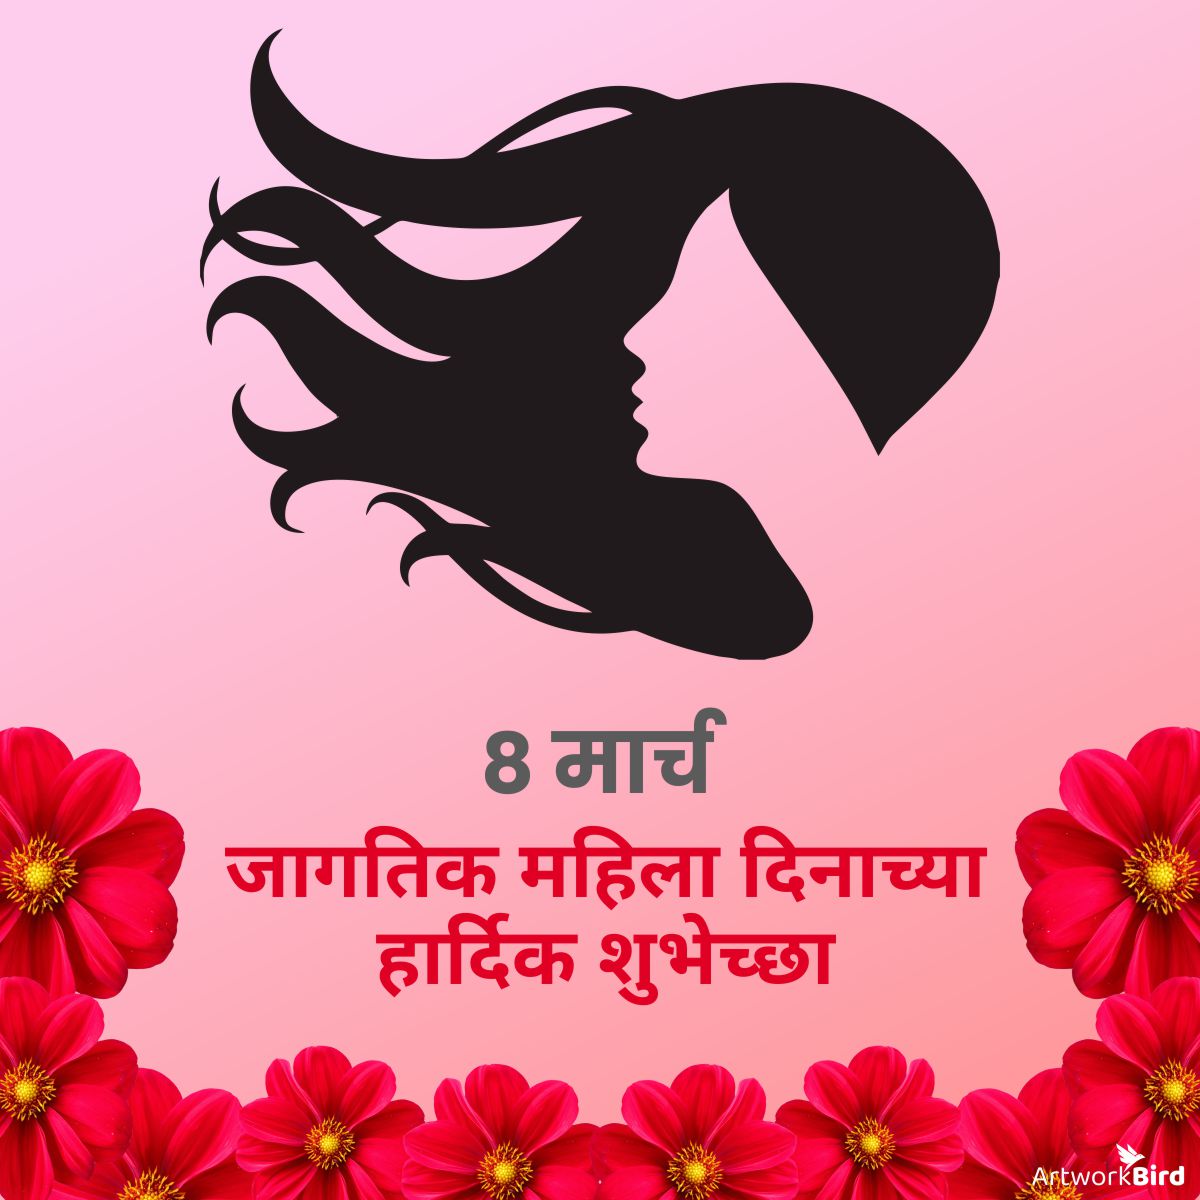 Women's Day Wishes - Marathi | Artworkbird